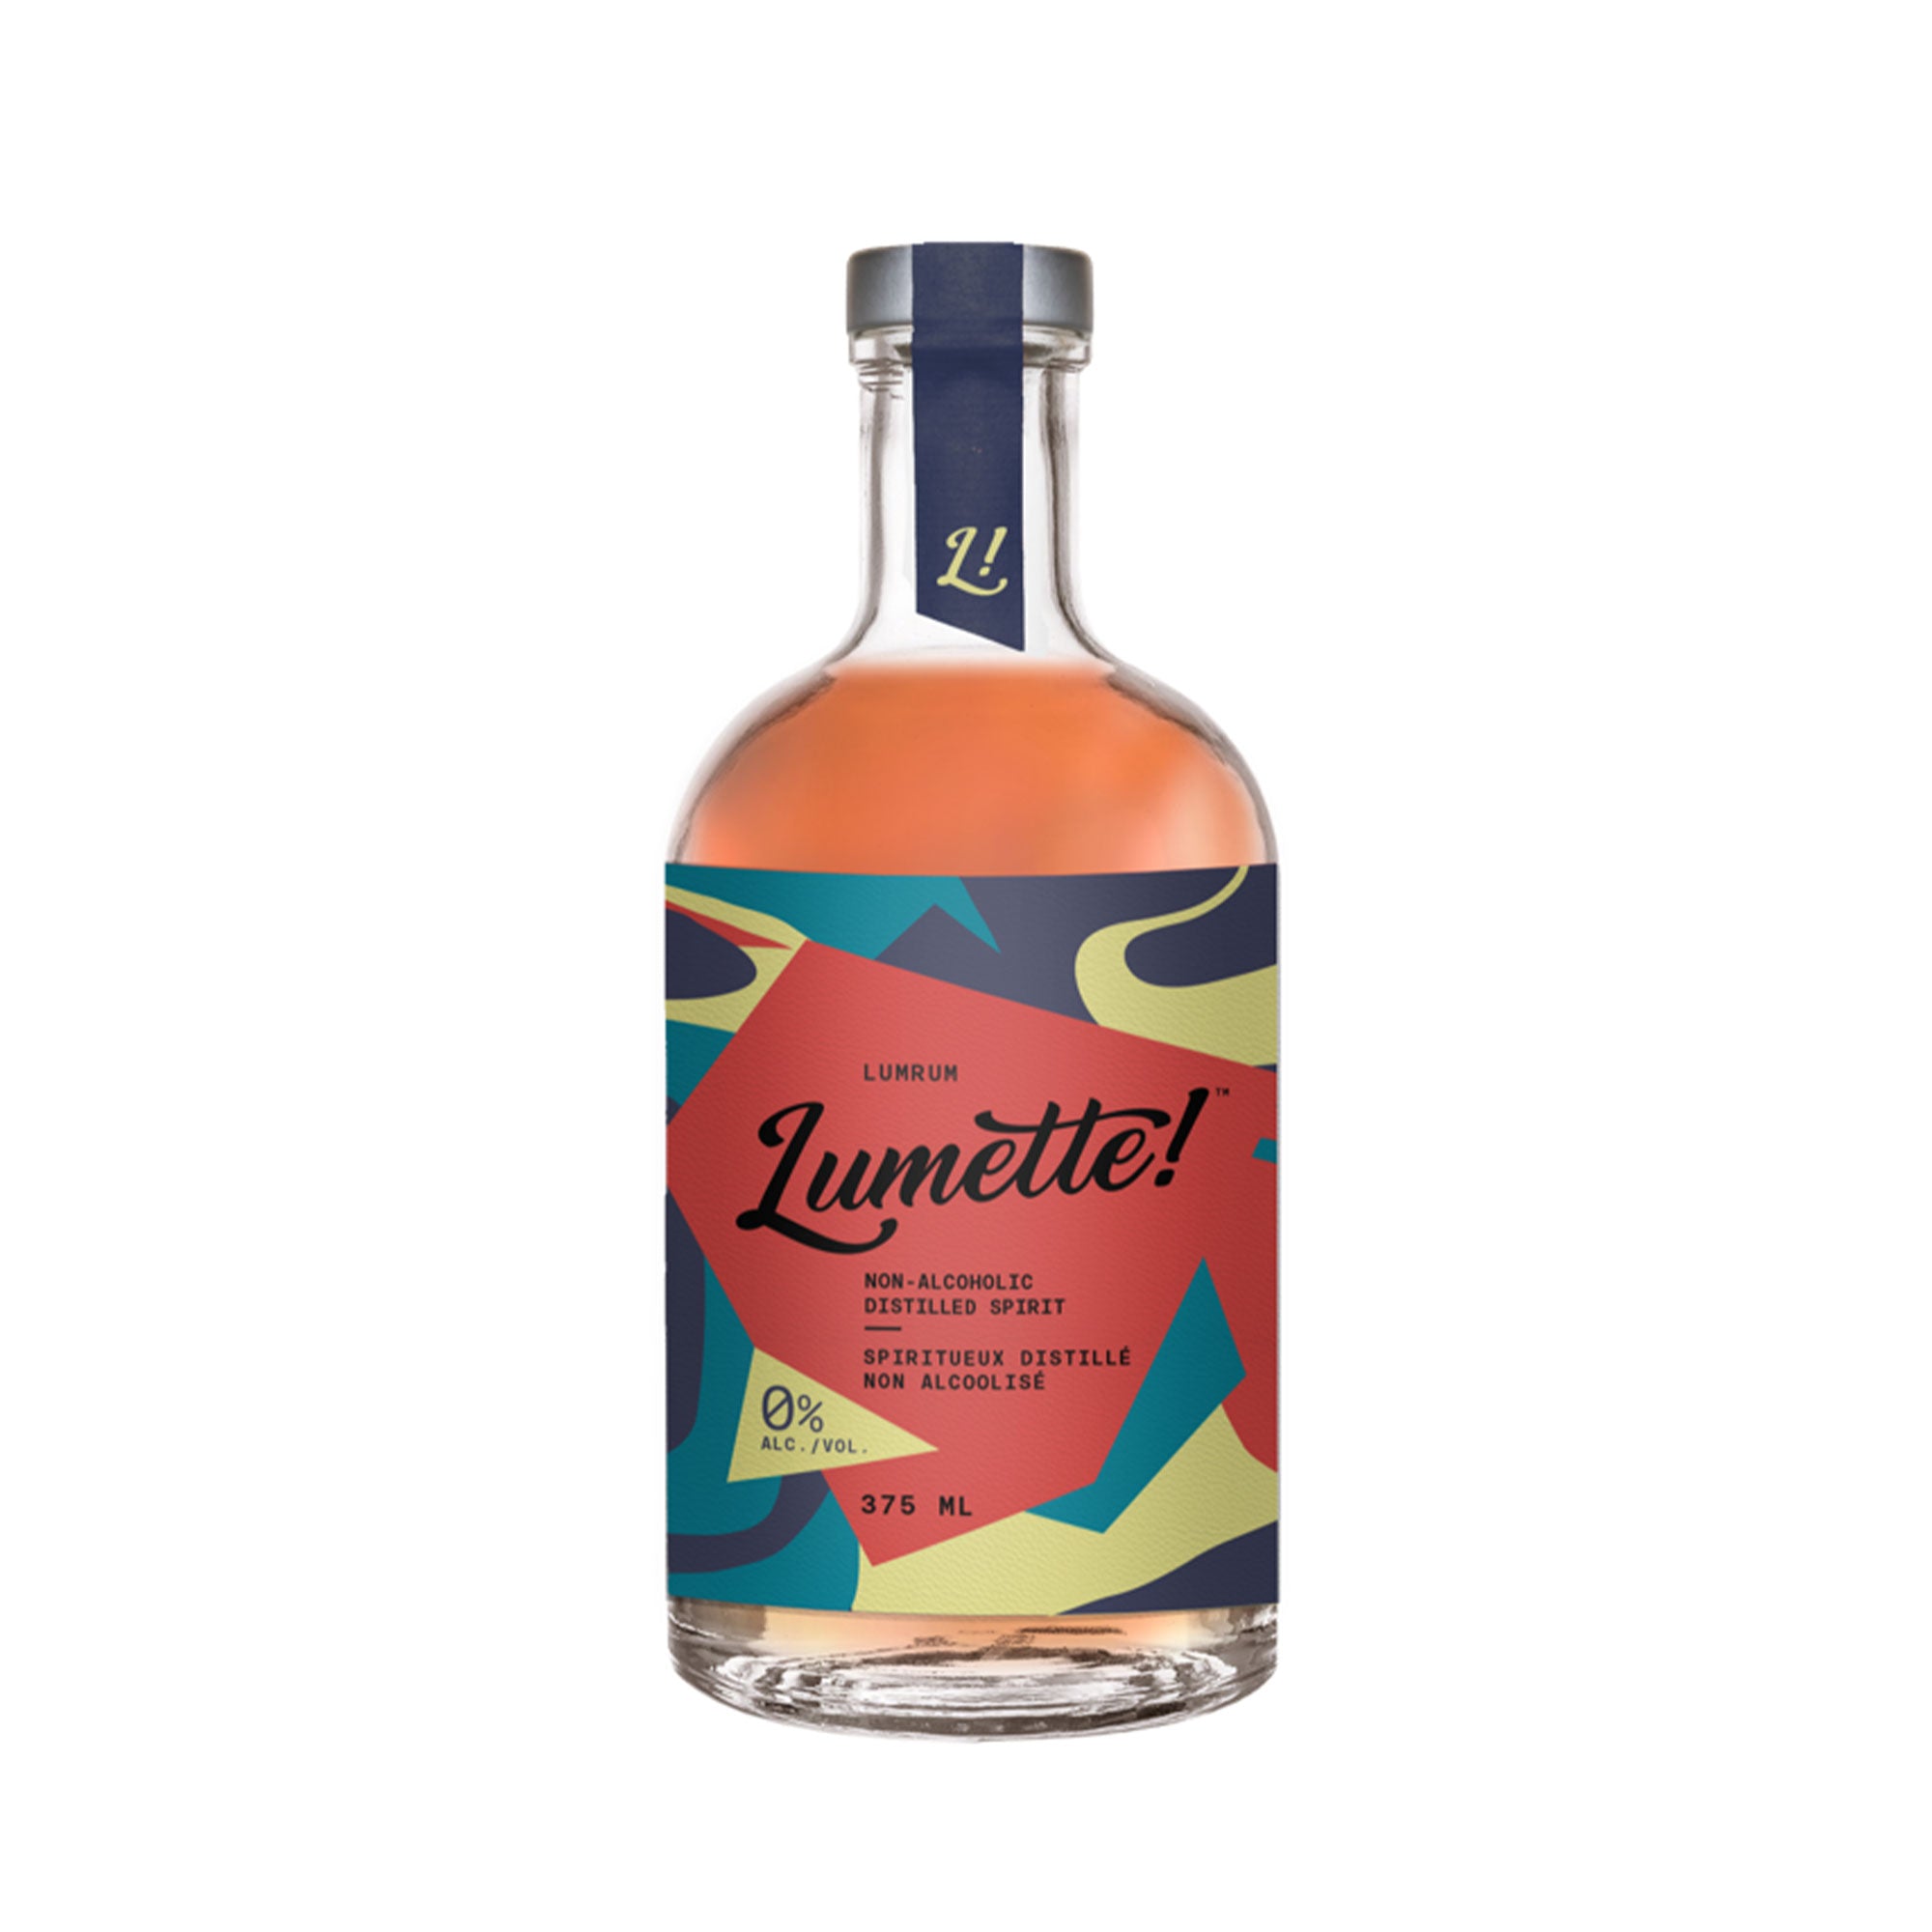 Lumette! - LumRum Alt-Spirit (375ml)